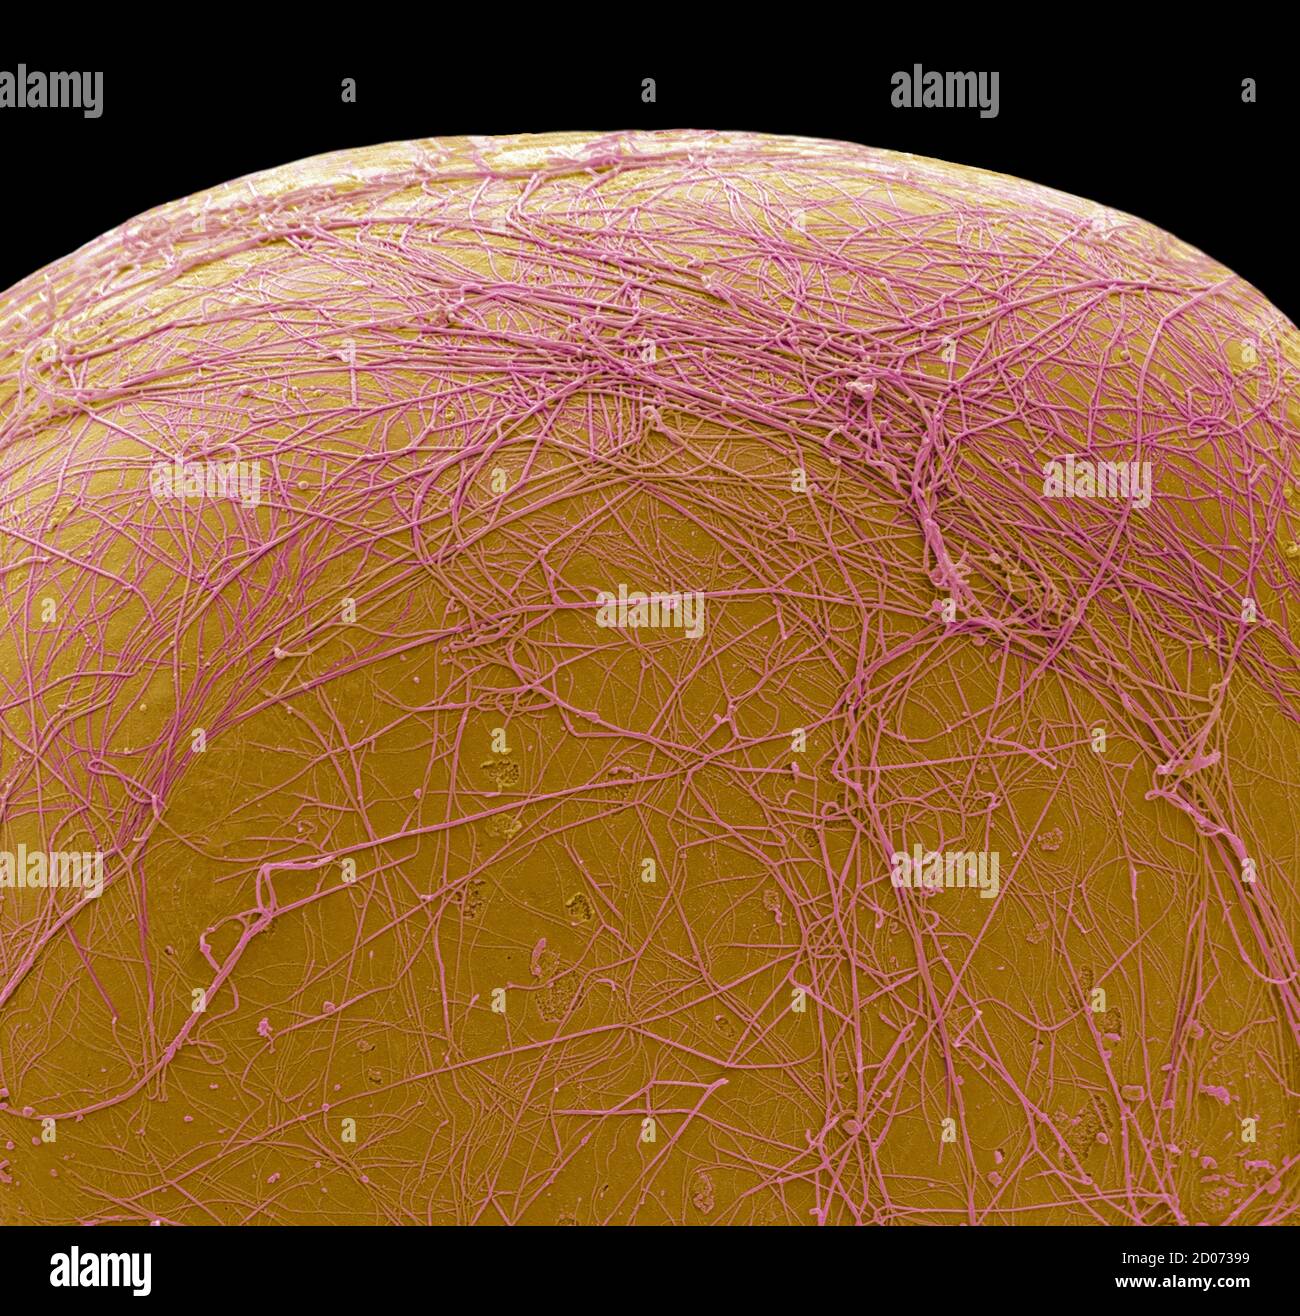 Cellule graisseuse. Micrographe électronique à balayage coloré (SEM) d'une partie d'une cellule stockant la graisse (adipocytes). Les cellules graisseuses sont l'un des plus grands types de cellules de la h Banque D'Images